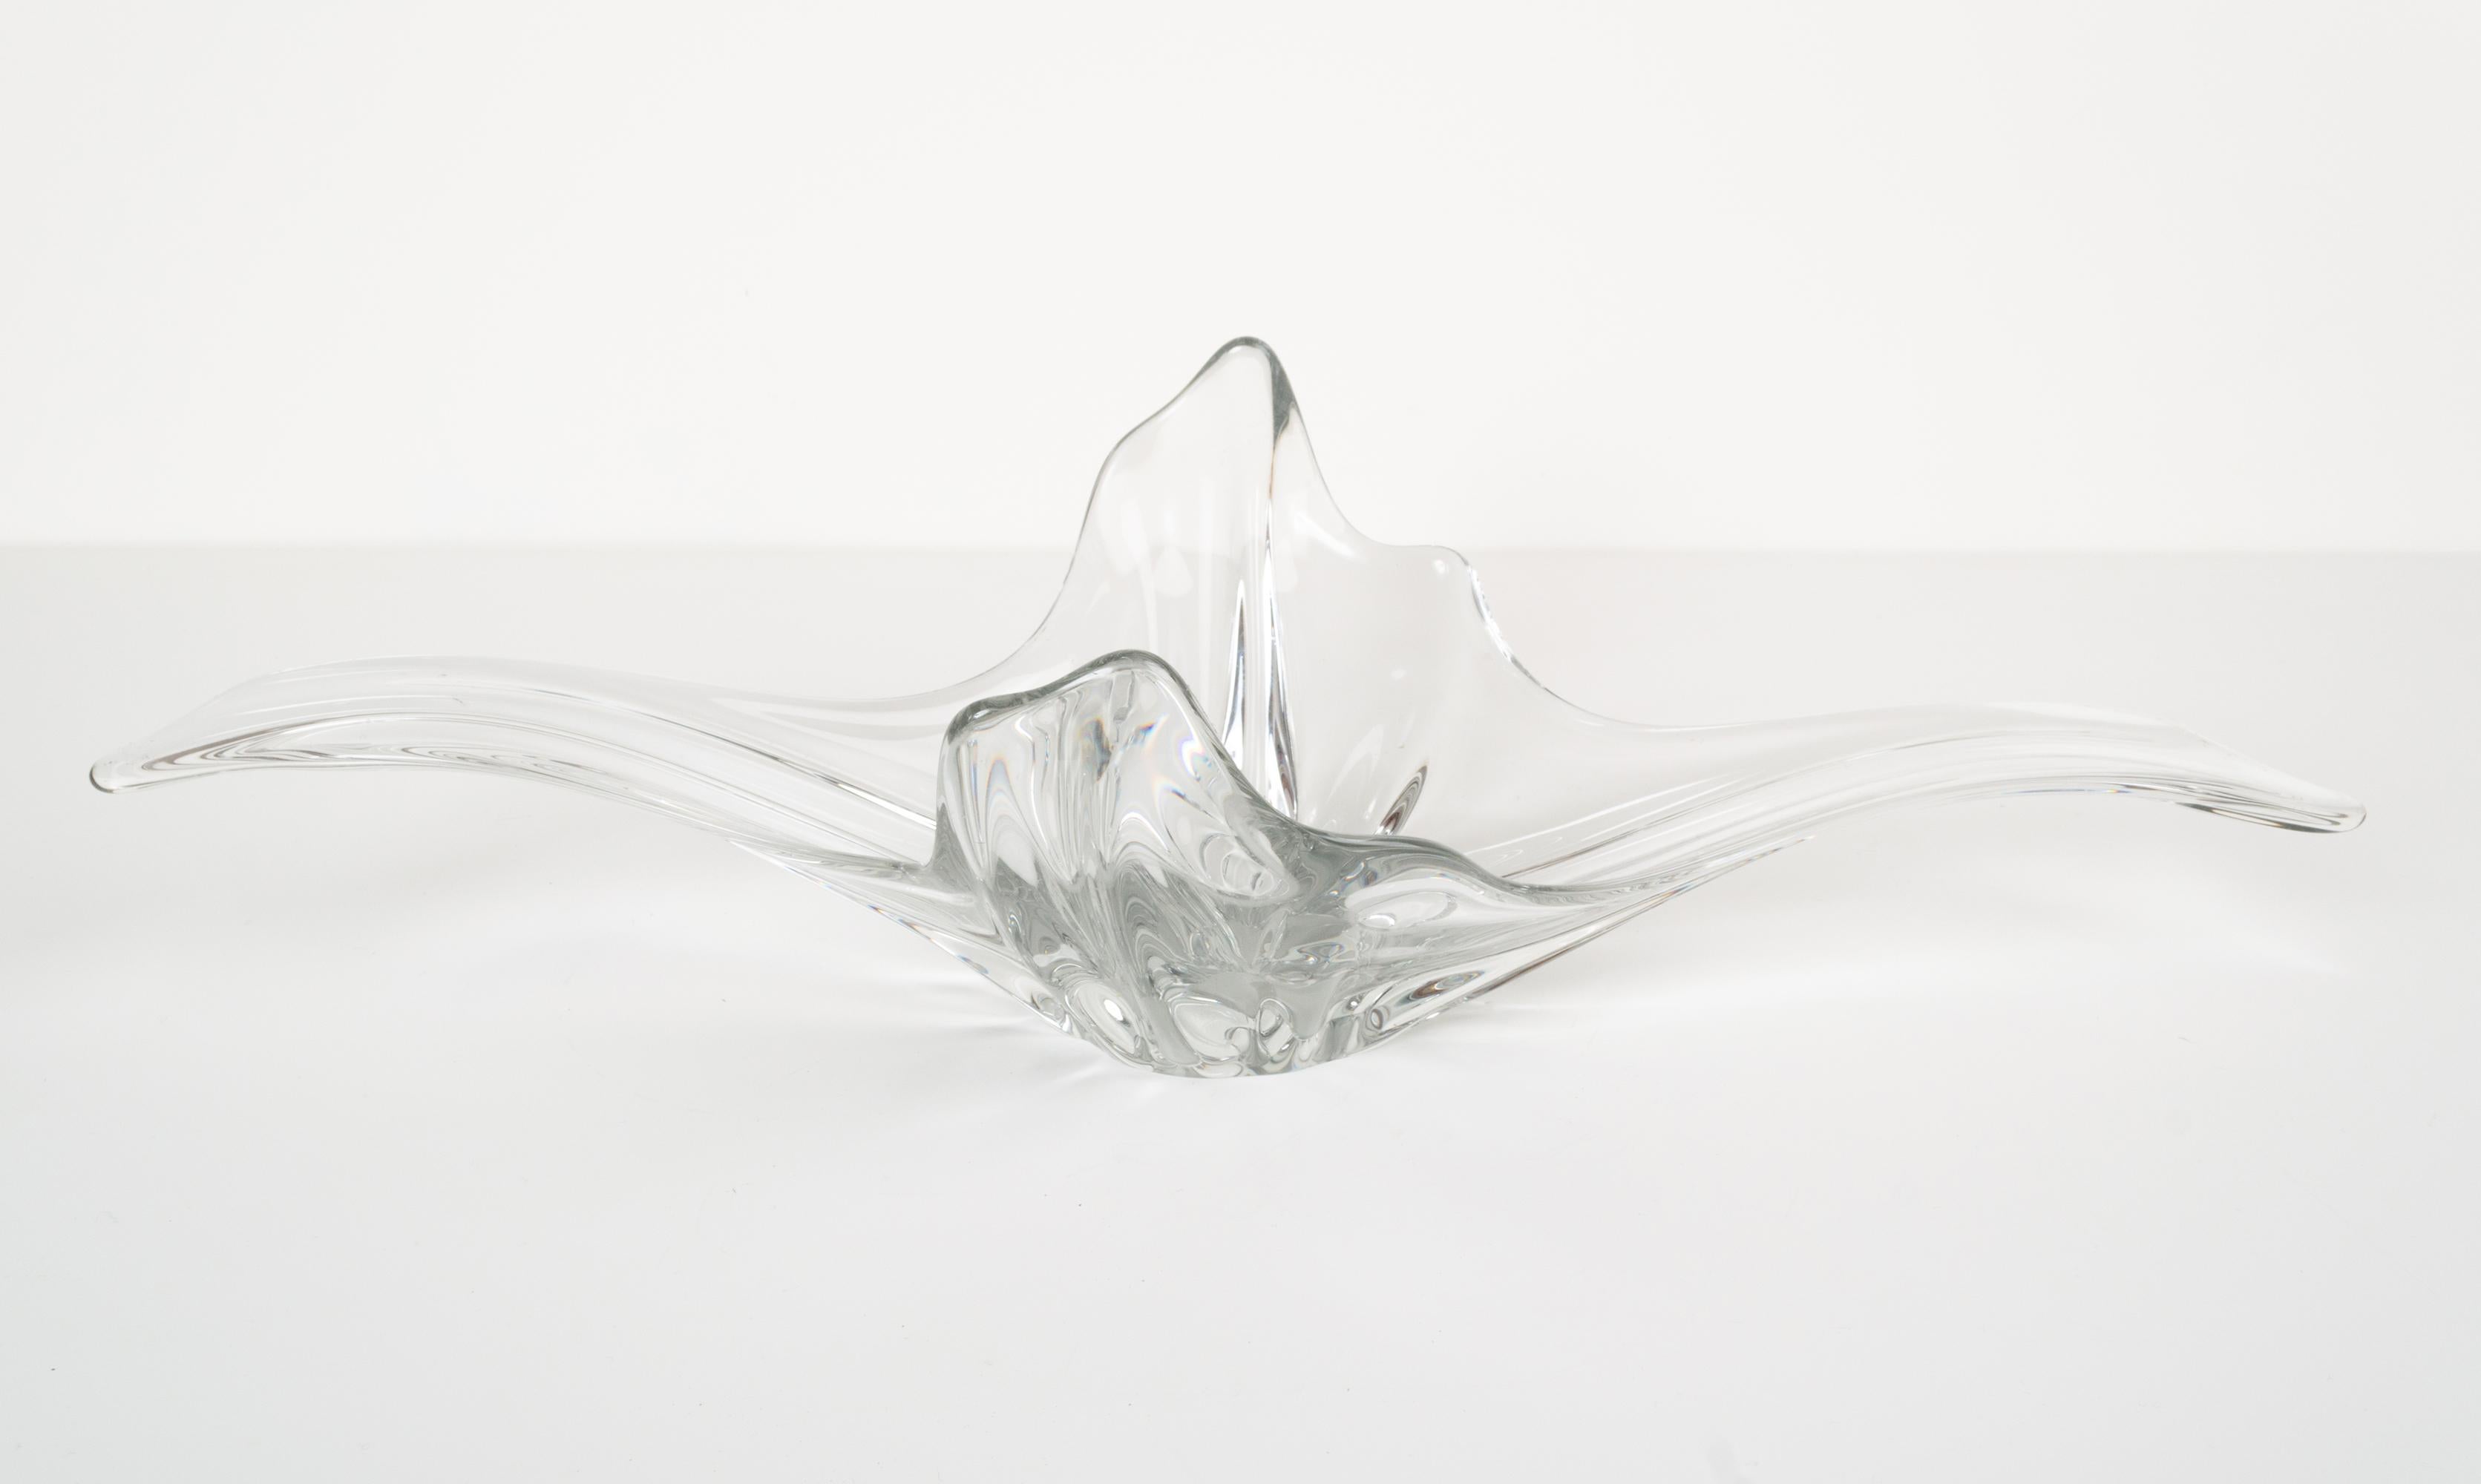 Kunstglas-Spritzschale. Frankreich, C.1950
Wunderbare organische Form.
Nach dem Vorbild von Val St. Lambert, Frankreich.
Präsentiert in ausgezeichnetem Zustand, dem Alter entsprechend, keine Chips.